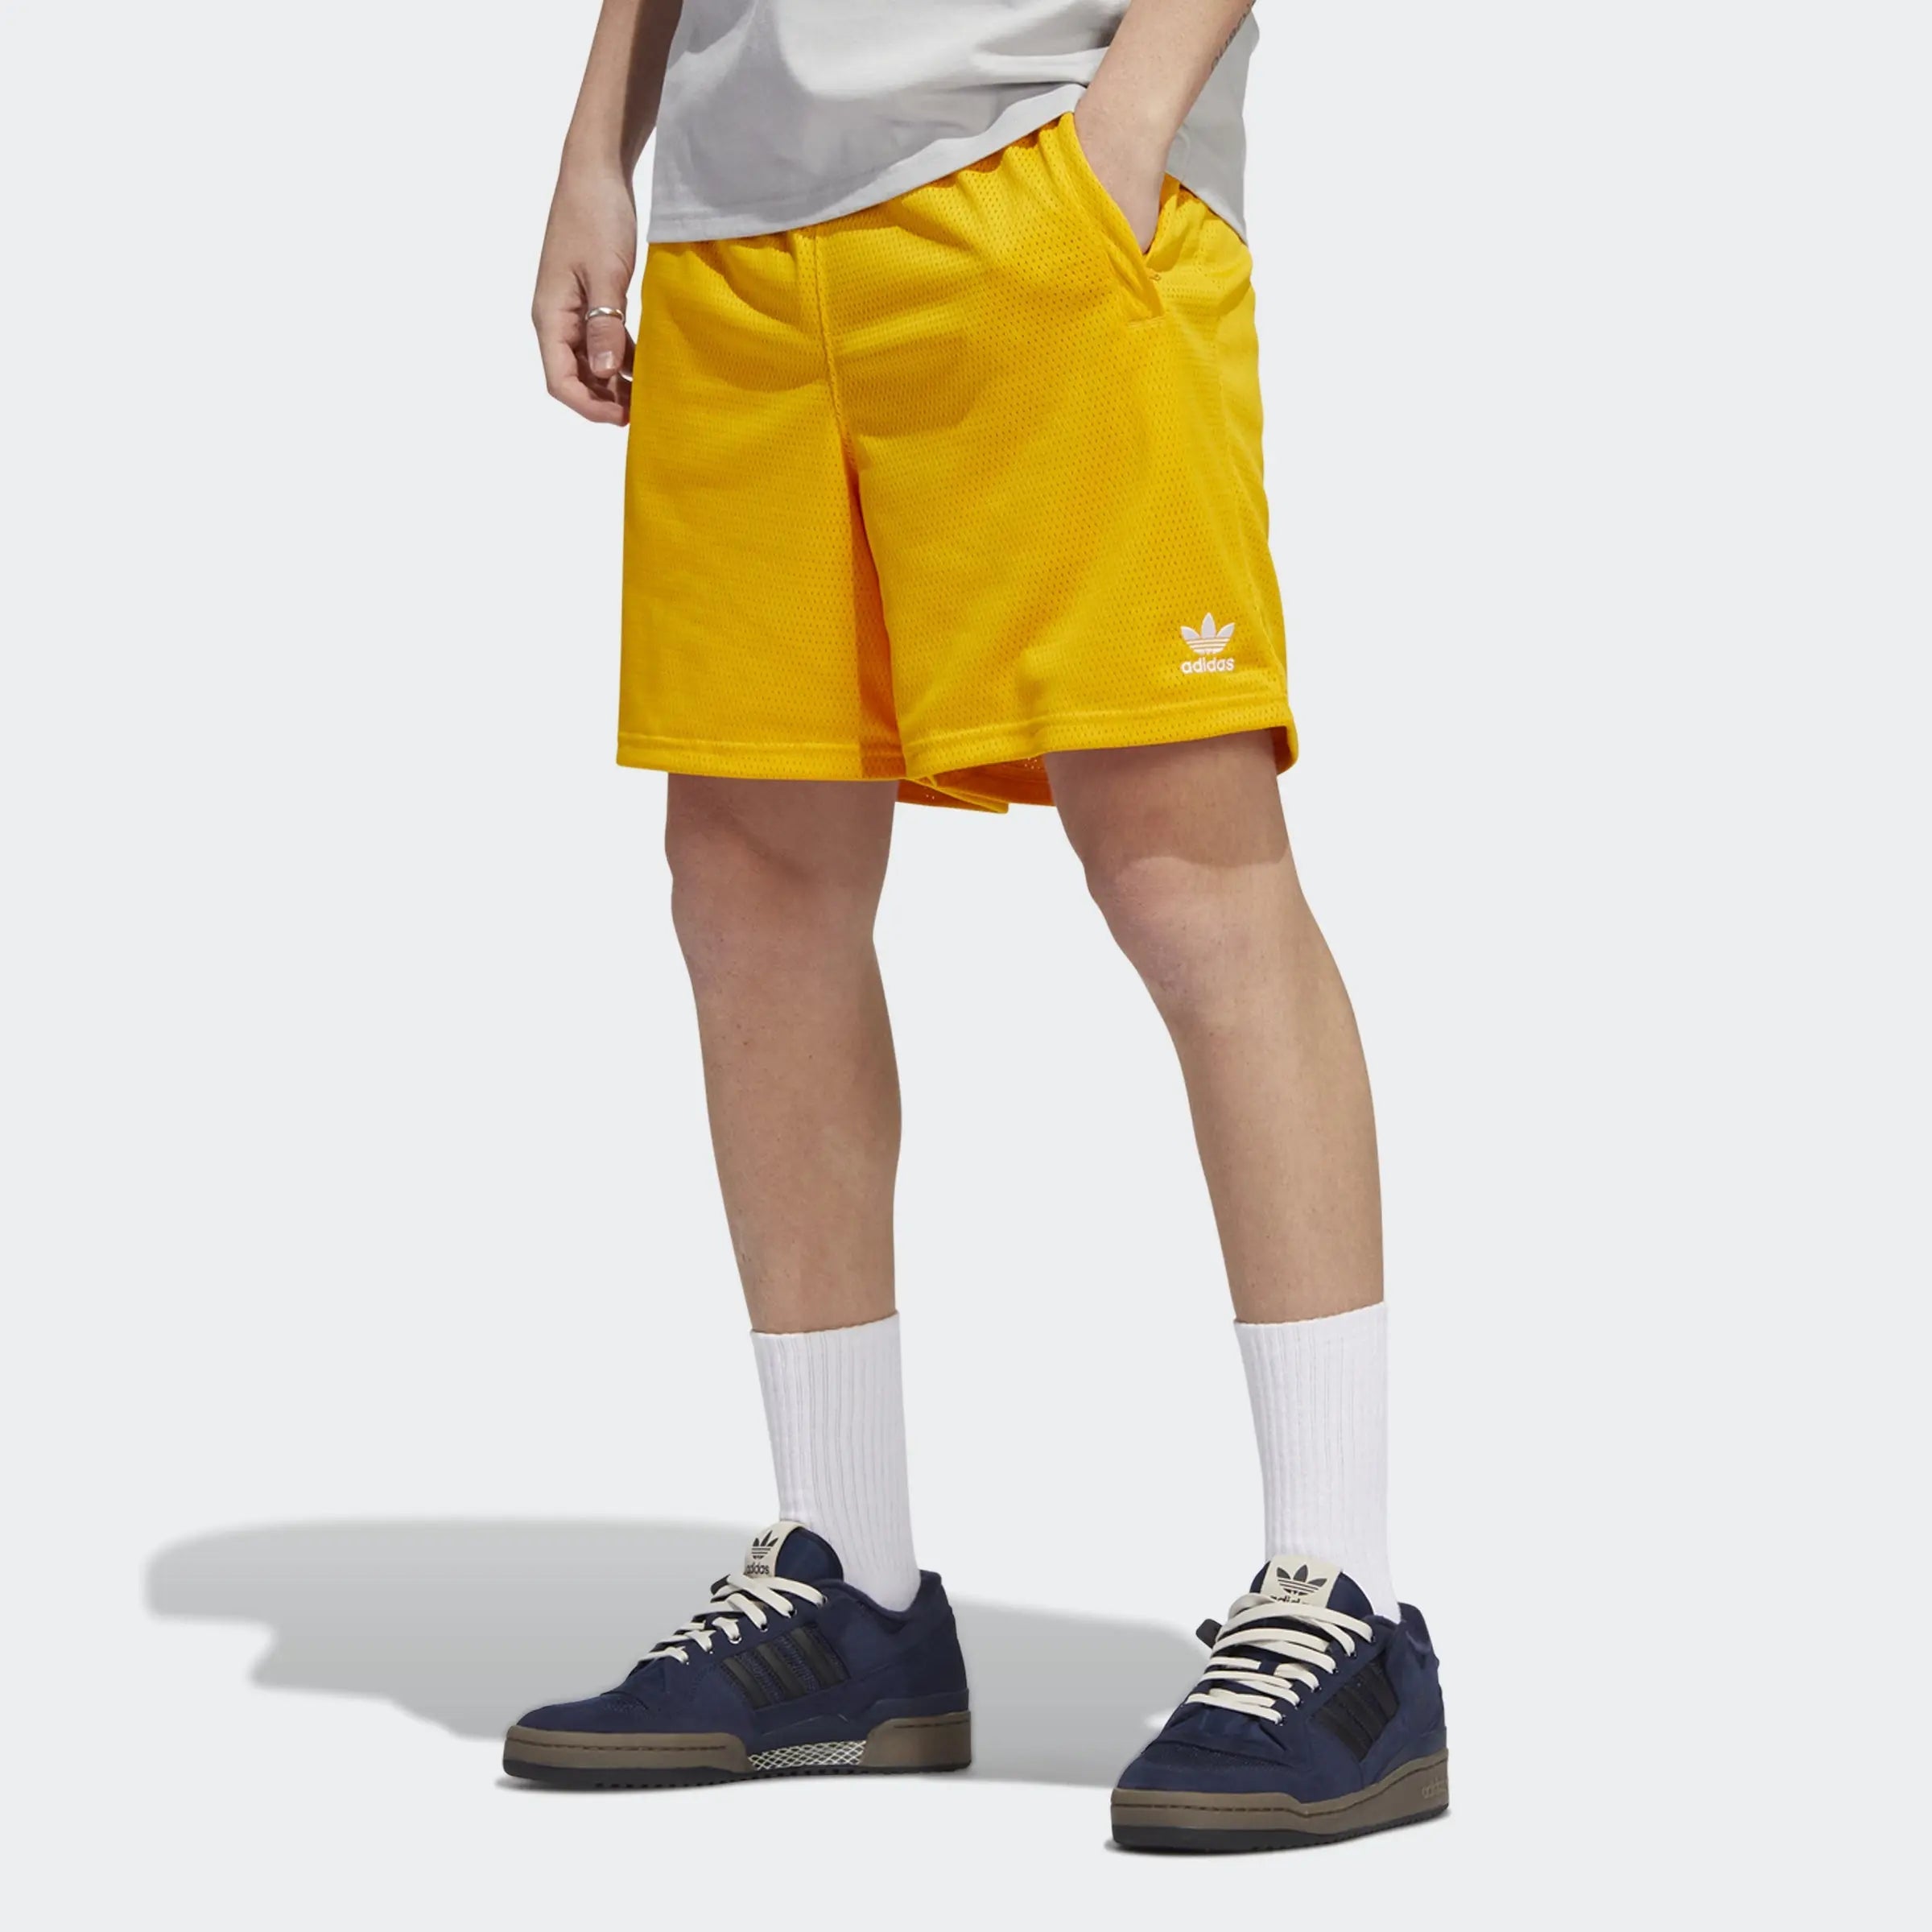 Adidas Essentials Mesh Short Gold - Puffer Reds